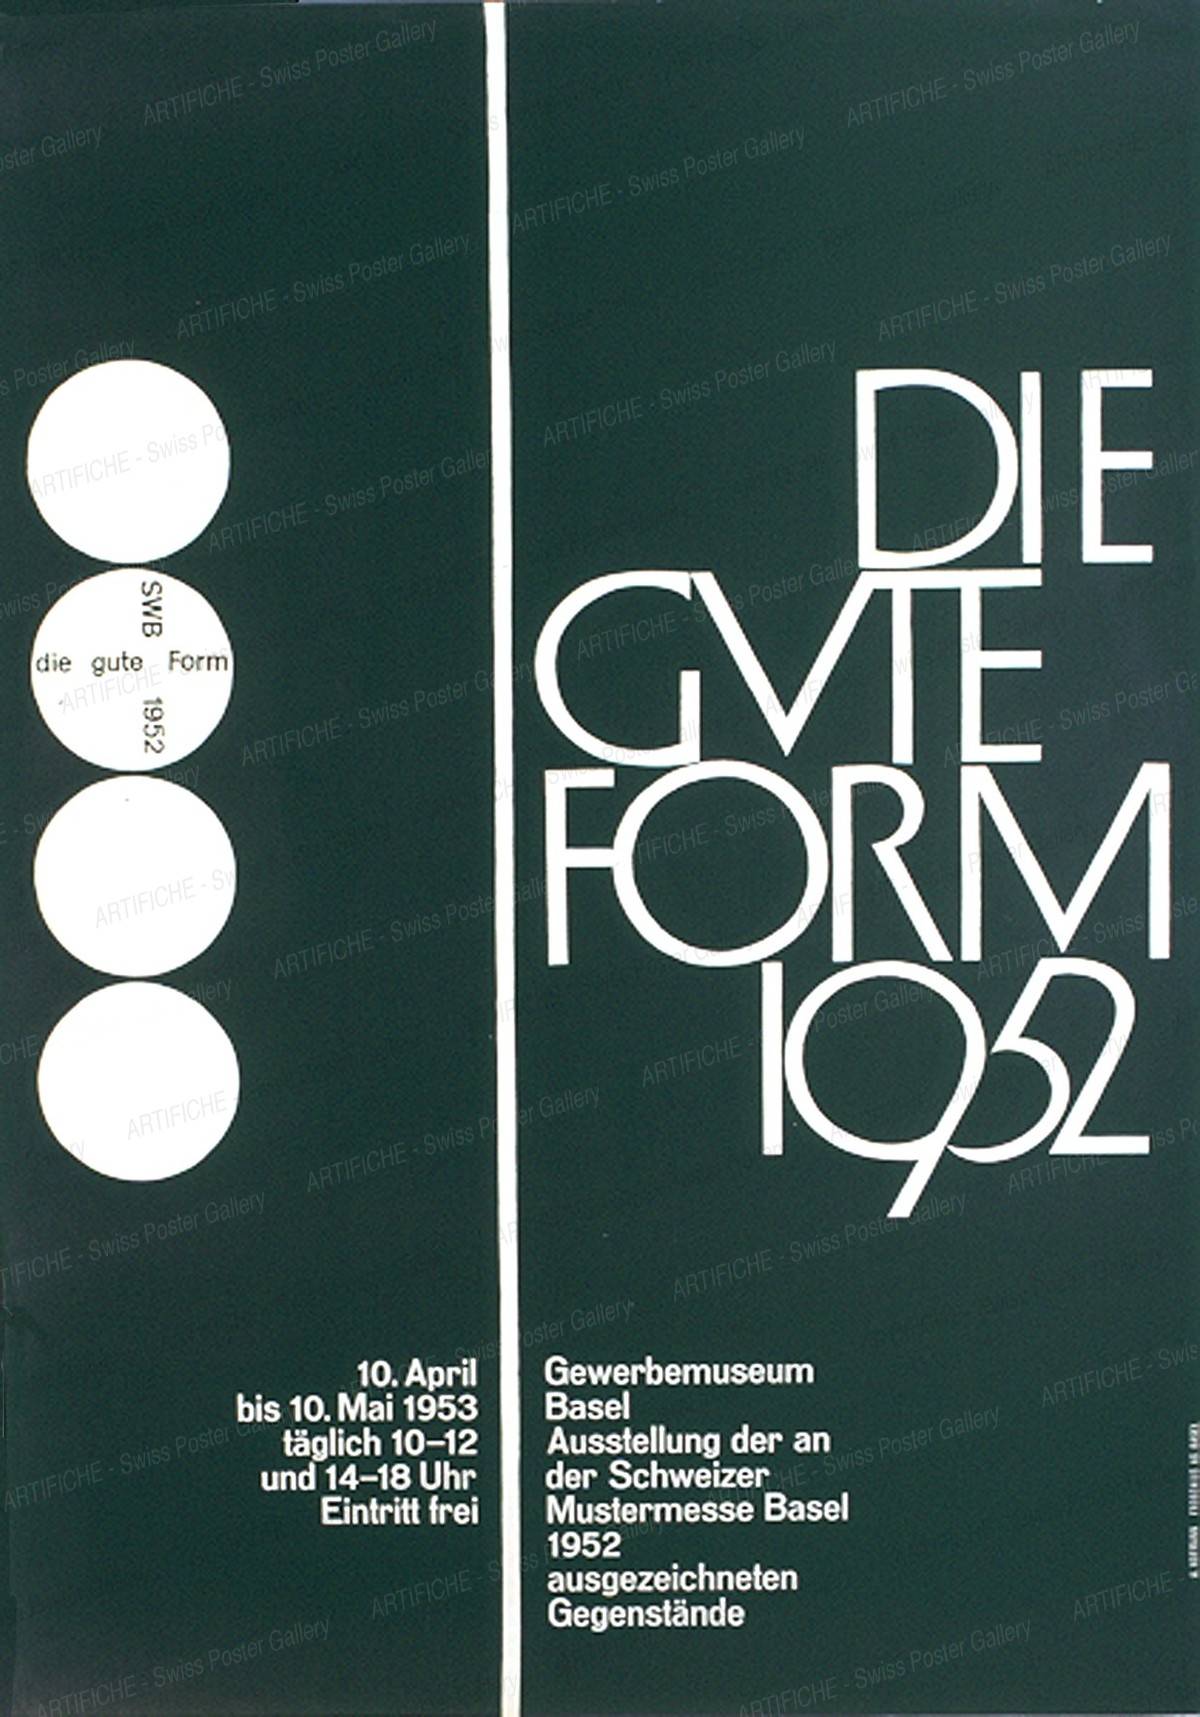 Gewerbemuseum Basel – DIE GUTE FORM 1952, Armin Hofmann